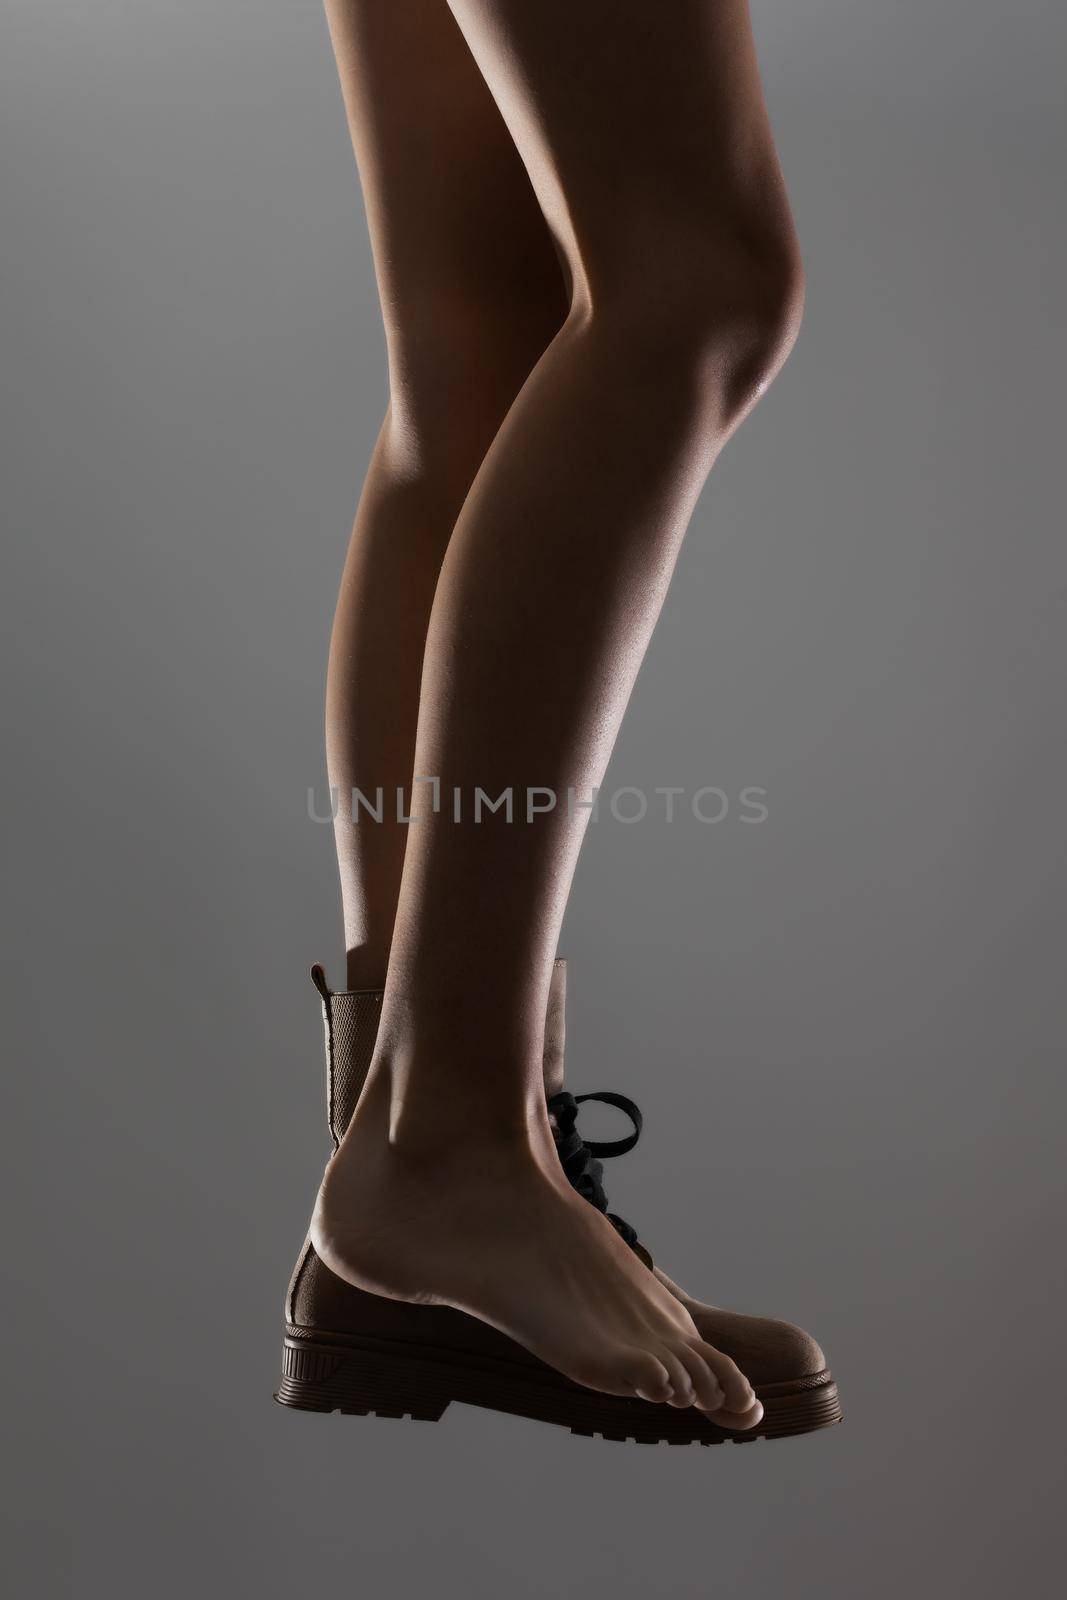 Sexy female legs wearing one waterproof boot. Side lit half silhouette.. by kokimk